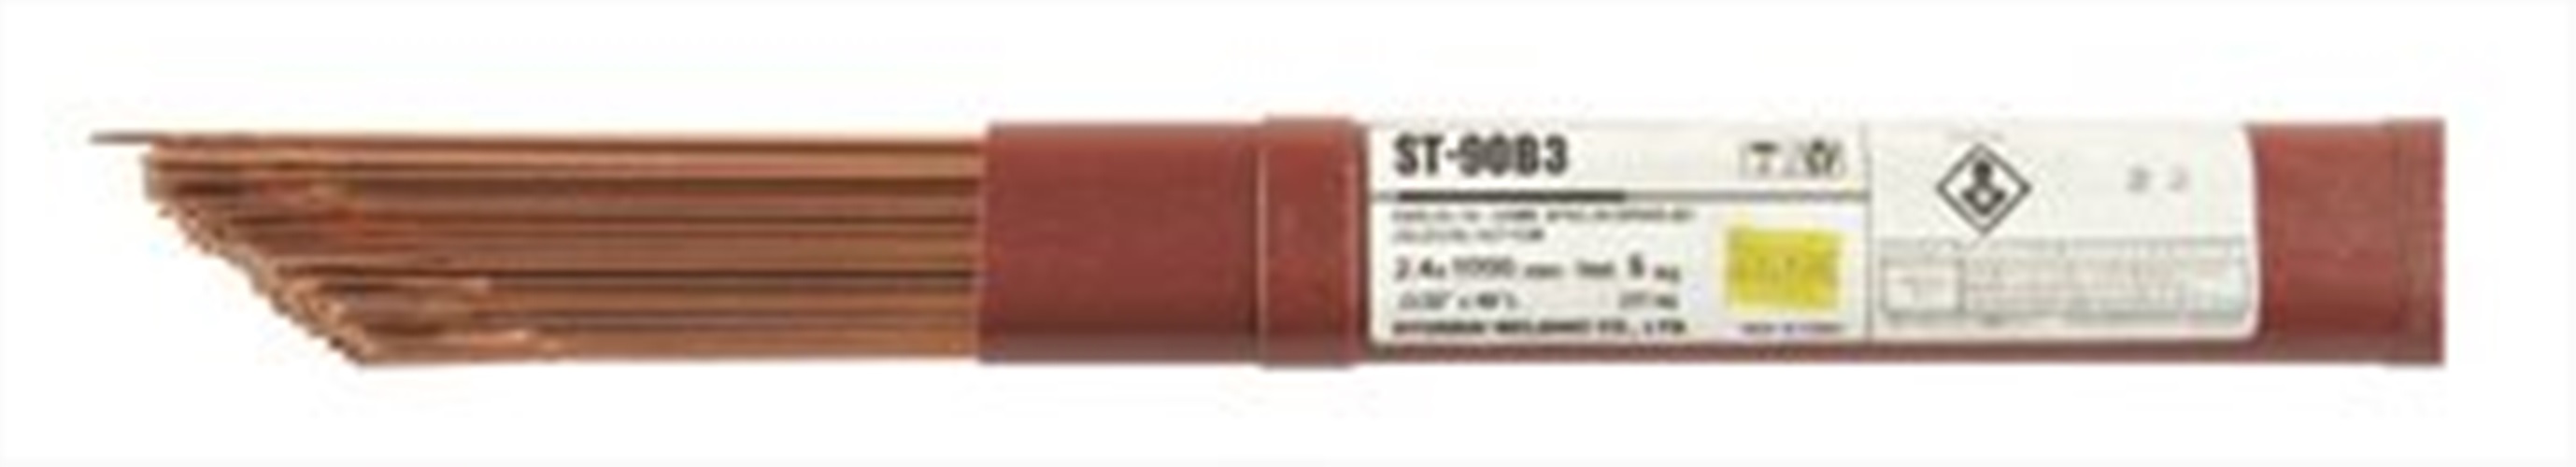 티그봉(저합금내열강)-ST-90B3 (2.4mm)